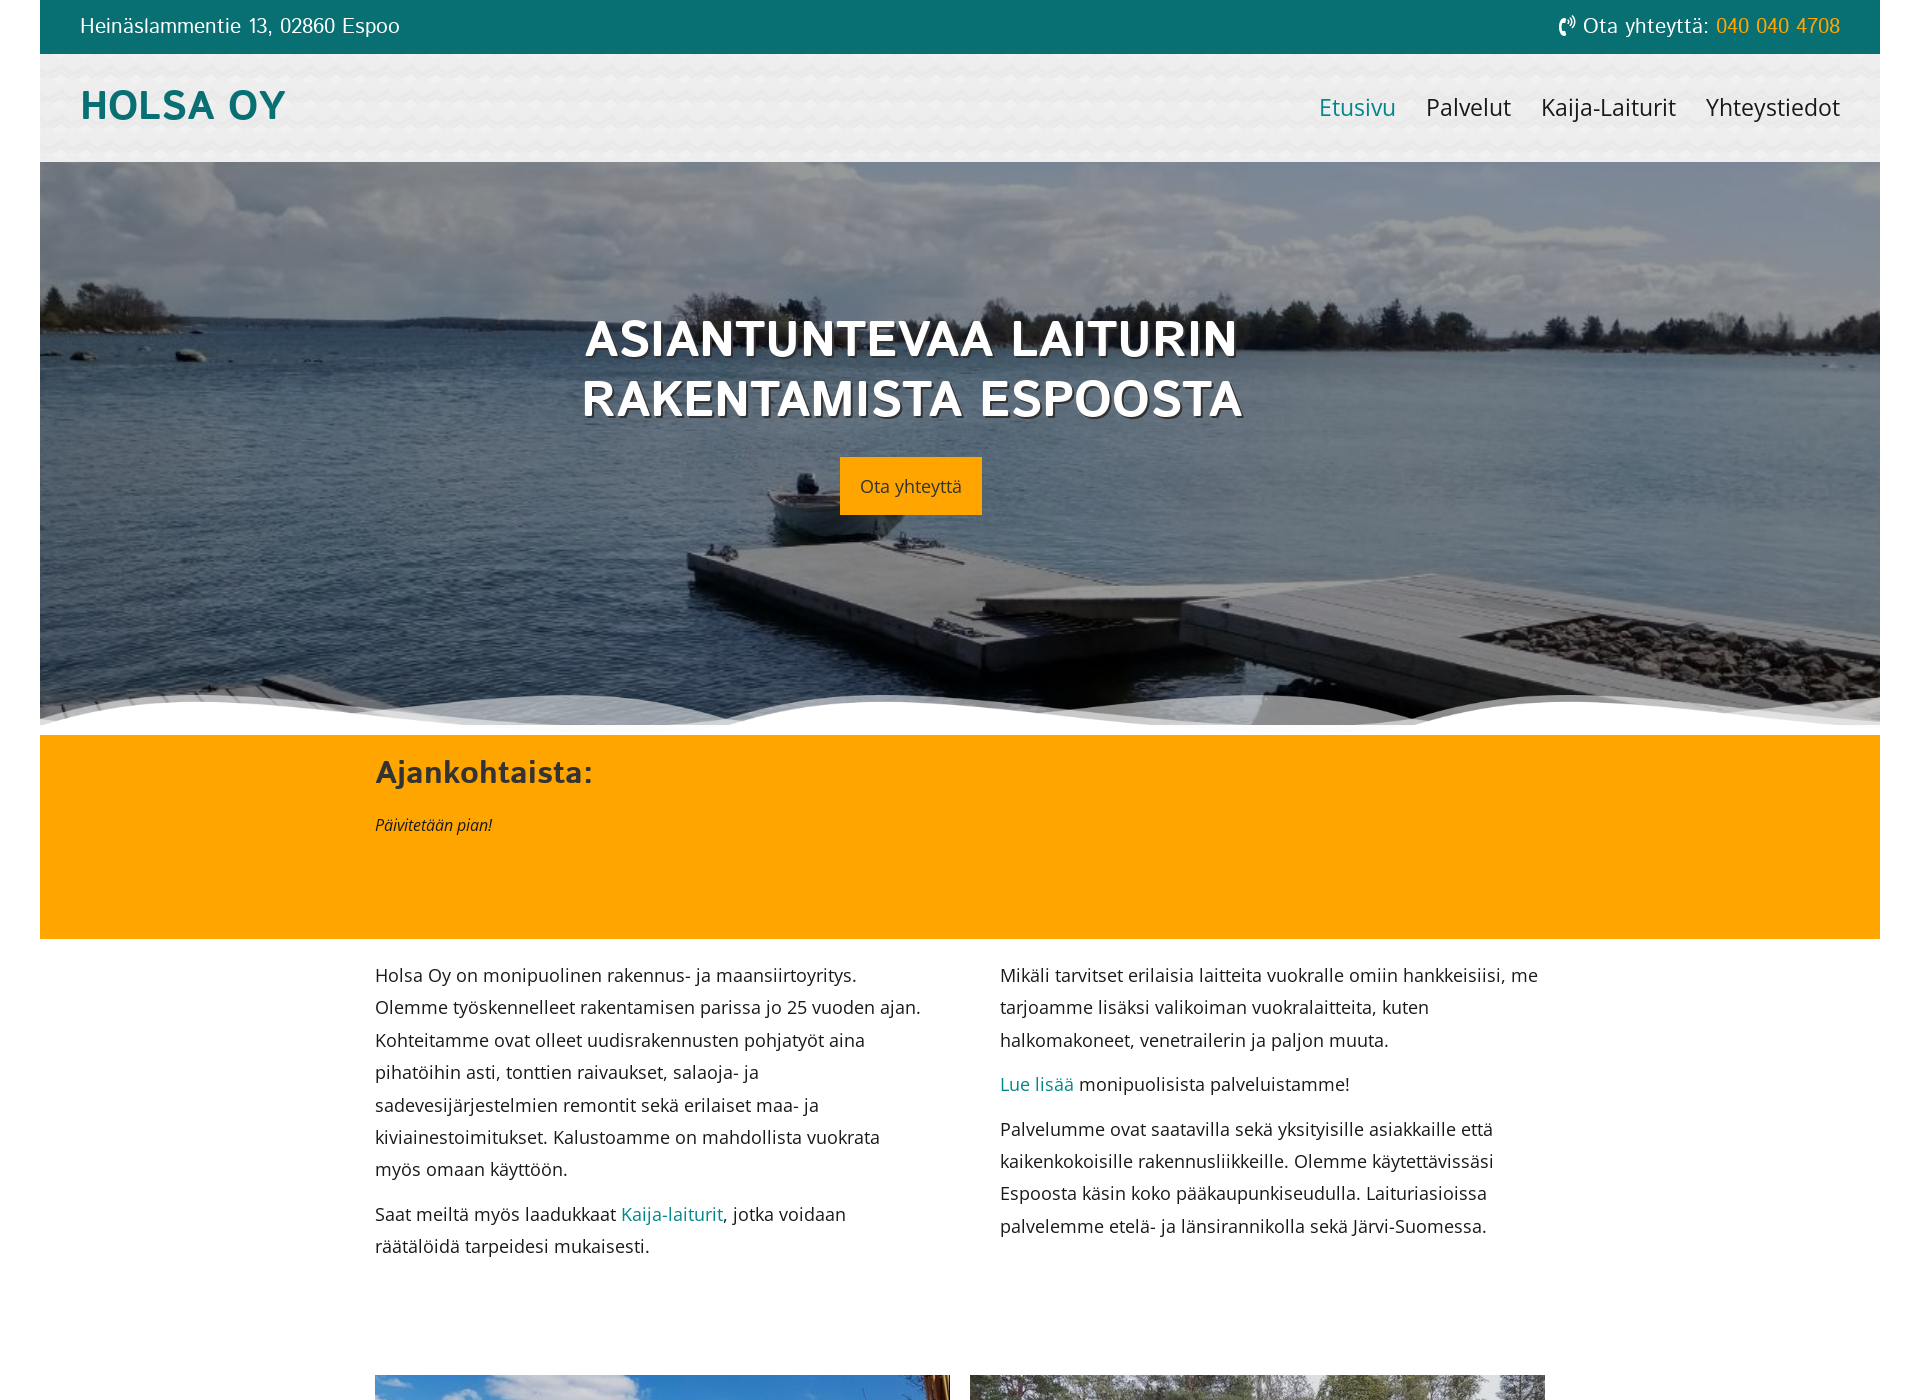 Screenshot for kaija-laiturit.fi